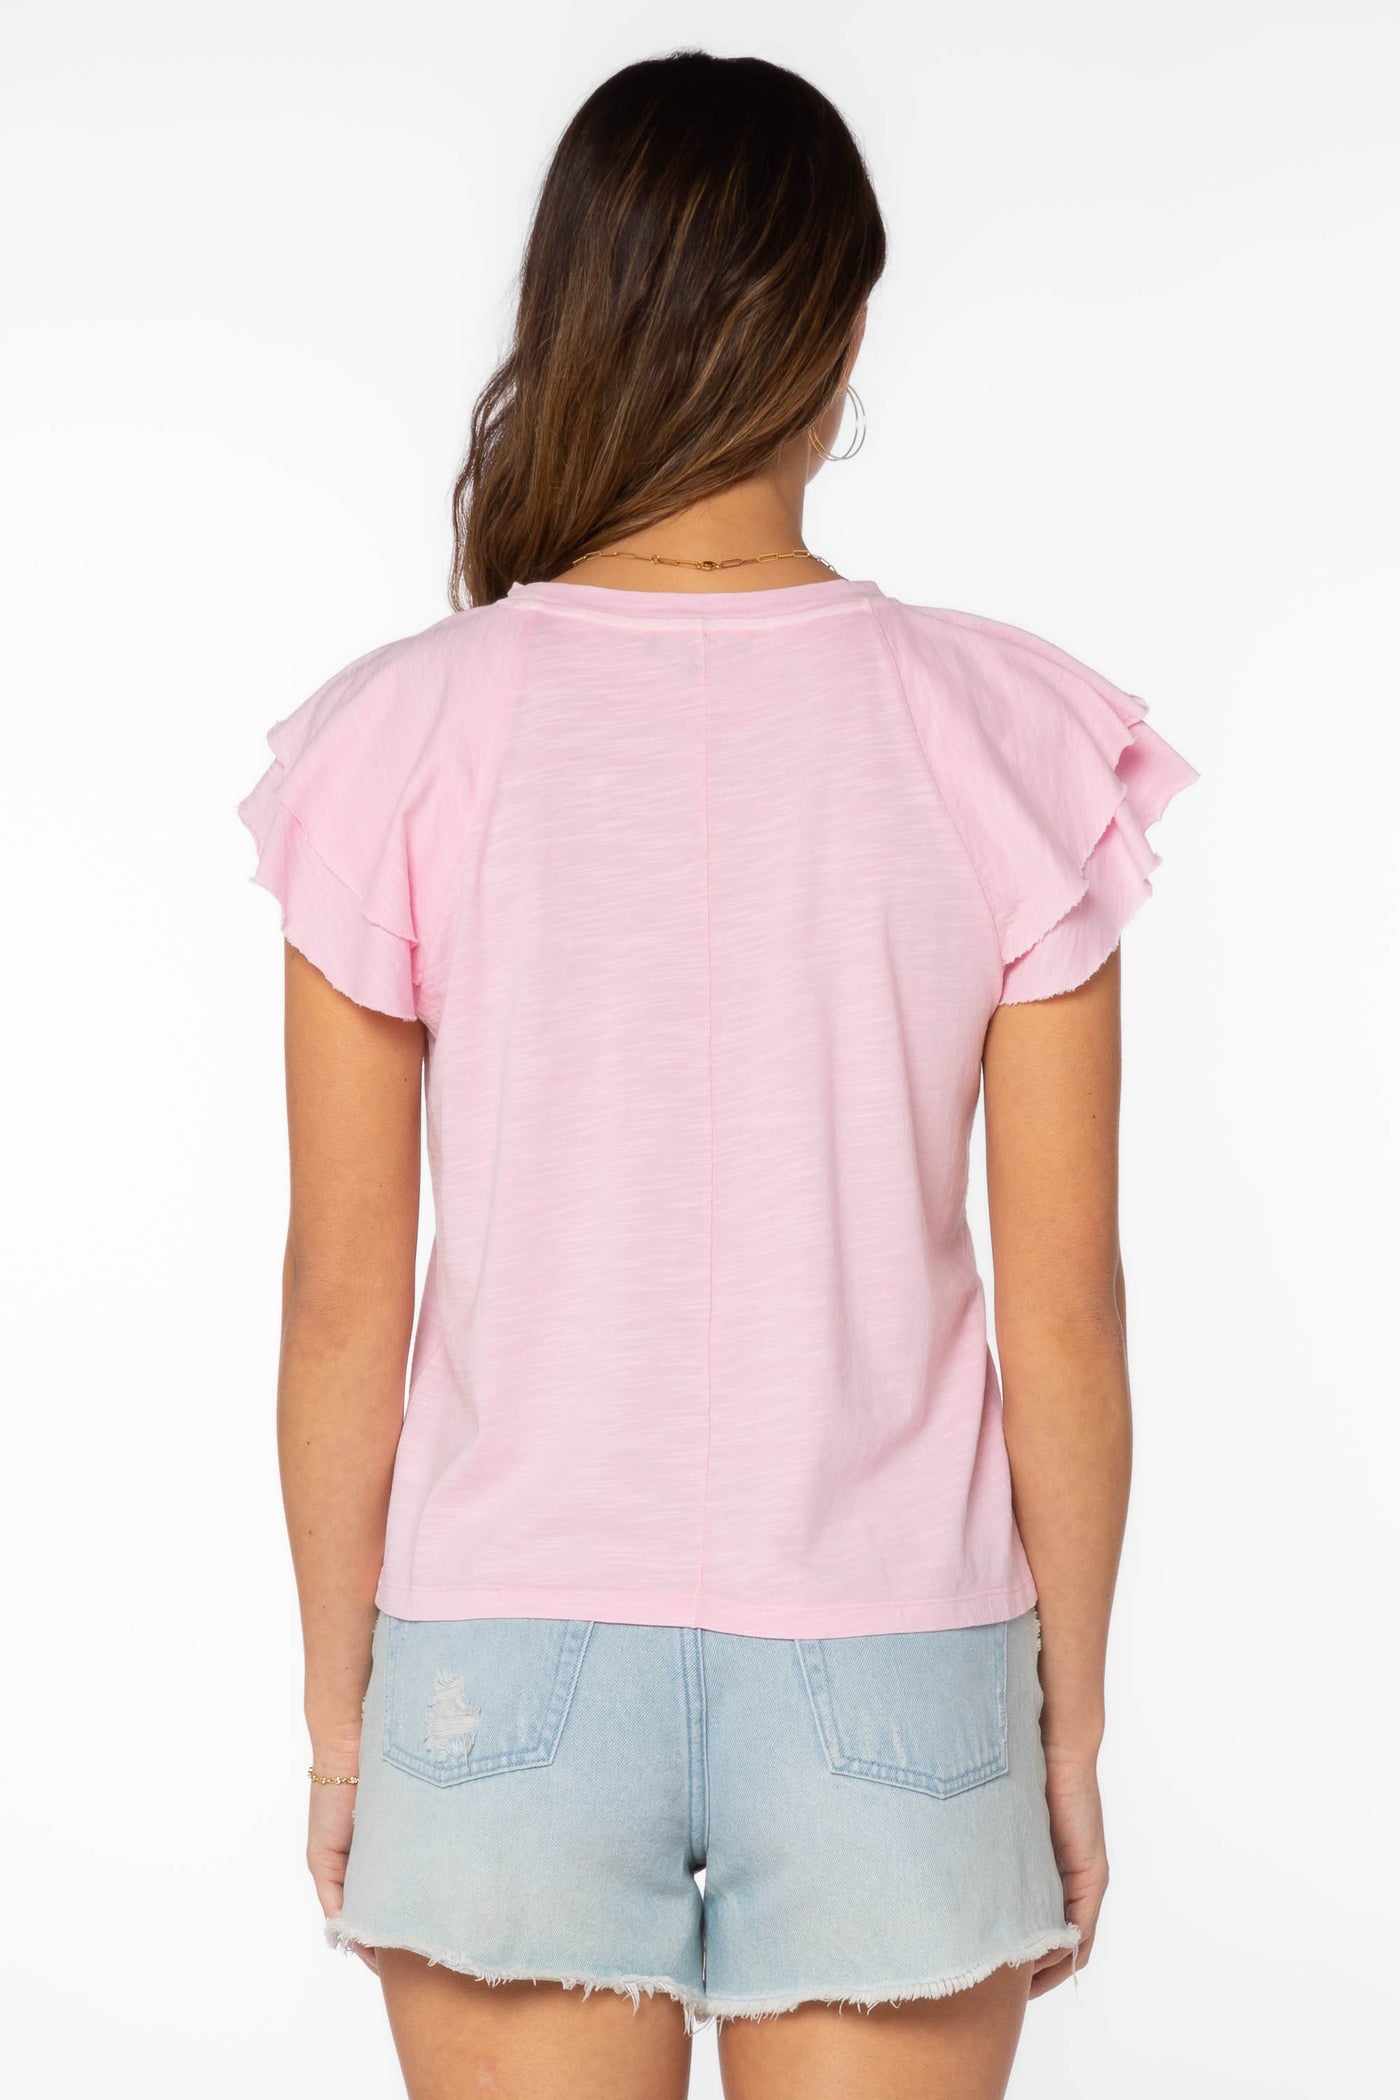 Sunny Pink Shirt - Tops - Velvet Heart Clothing